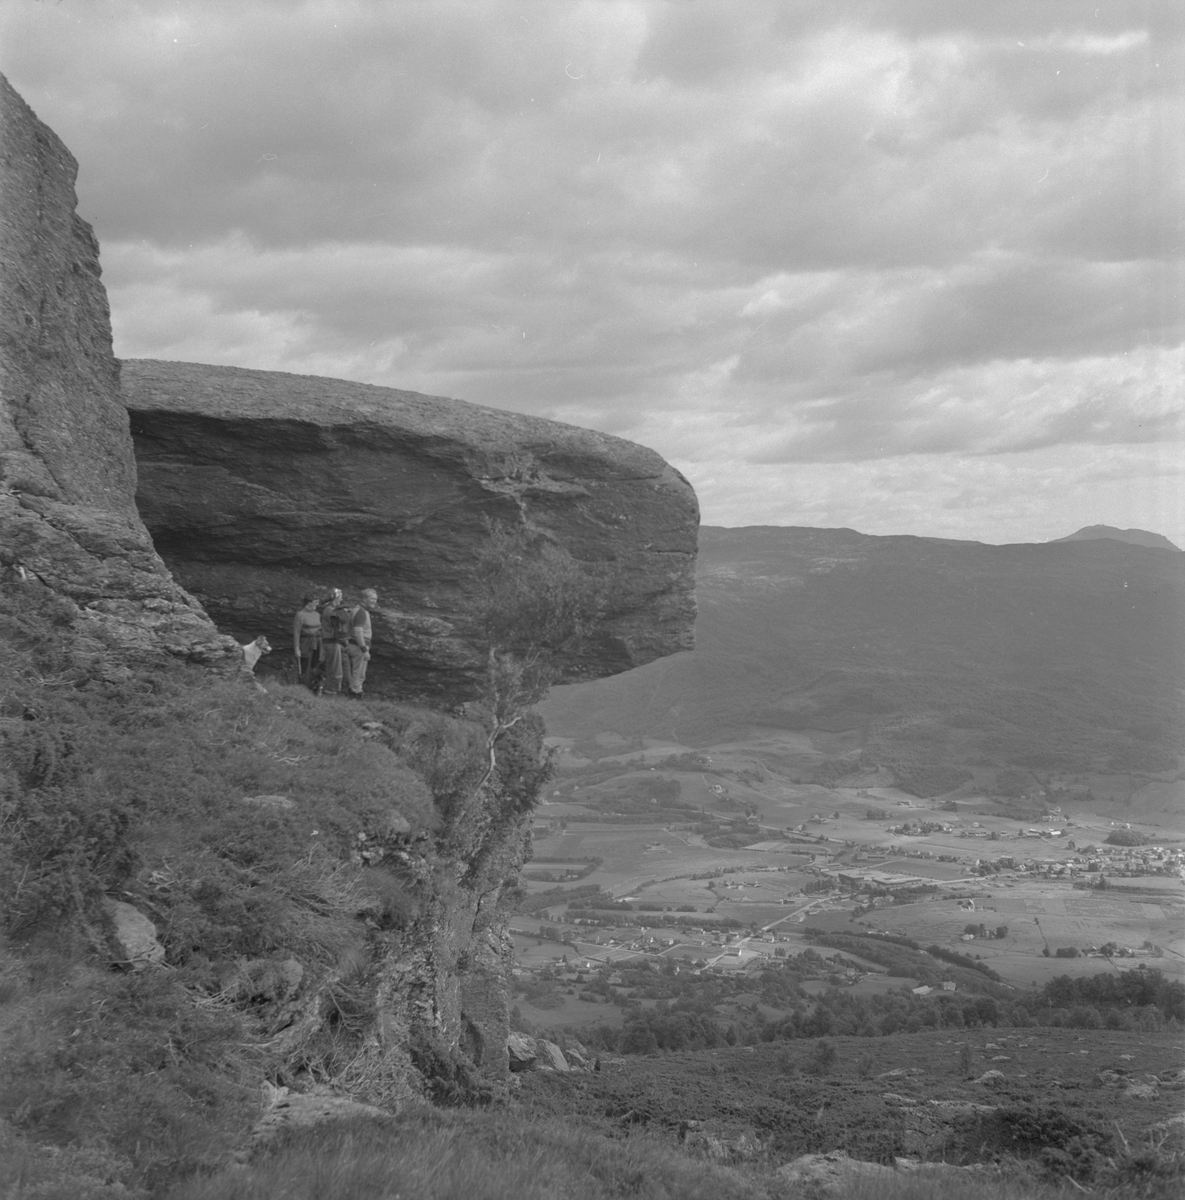 Digrakvedno på Varleite mellom Etne og Skånevik, 1978. I bakgrunnen er utsikt over Etne sett mot sør.